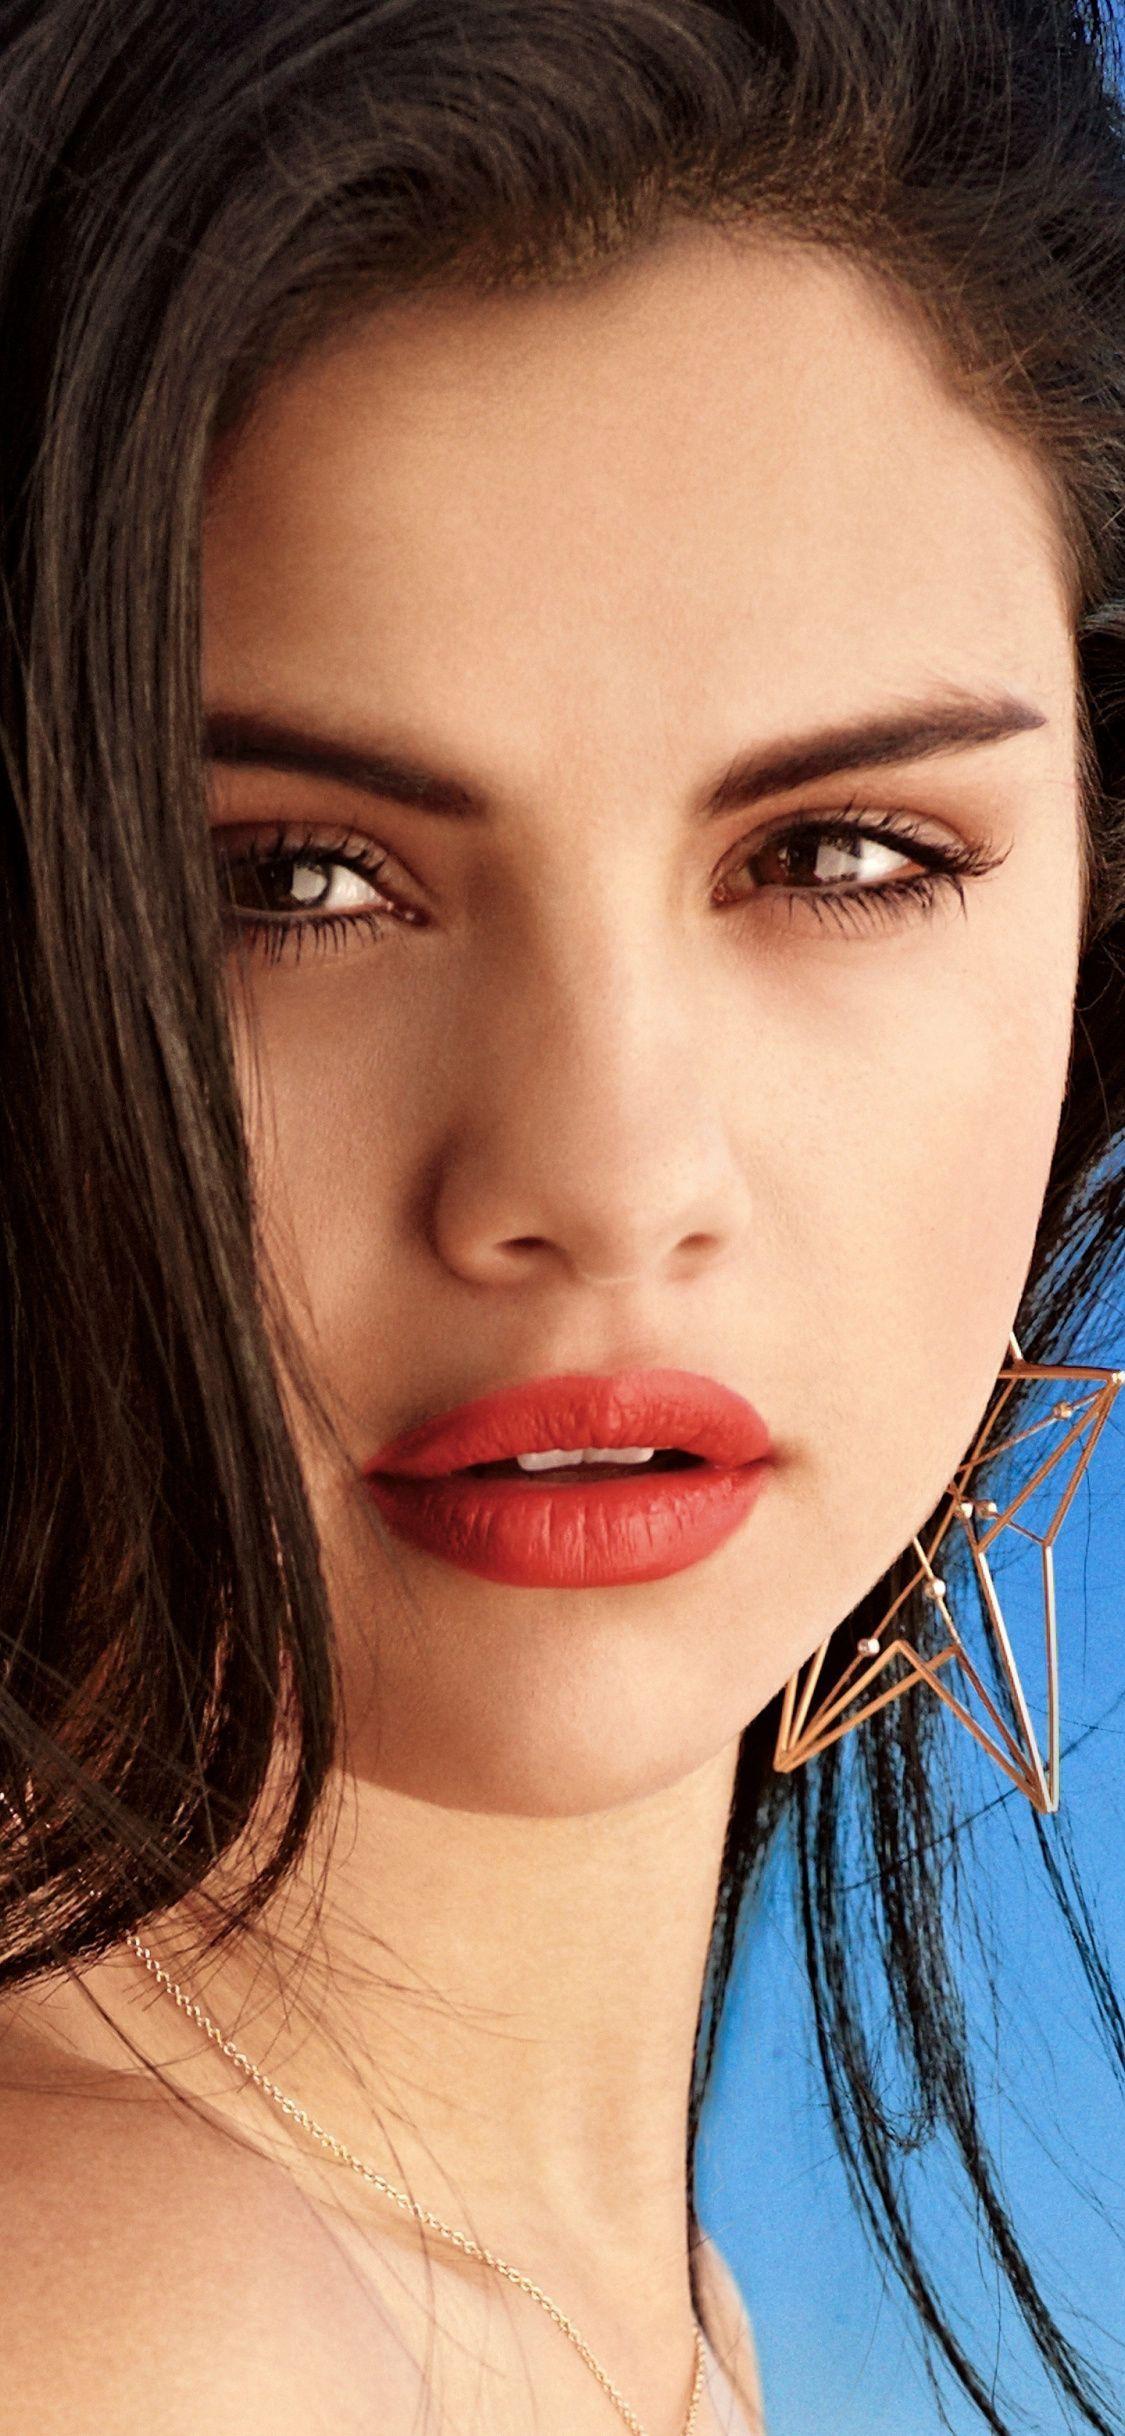 1125x2436 Hình ảnh của Selena Gomez - Tải xuống những bức ảnh hiếm của nữ ca sĩ